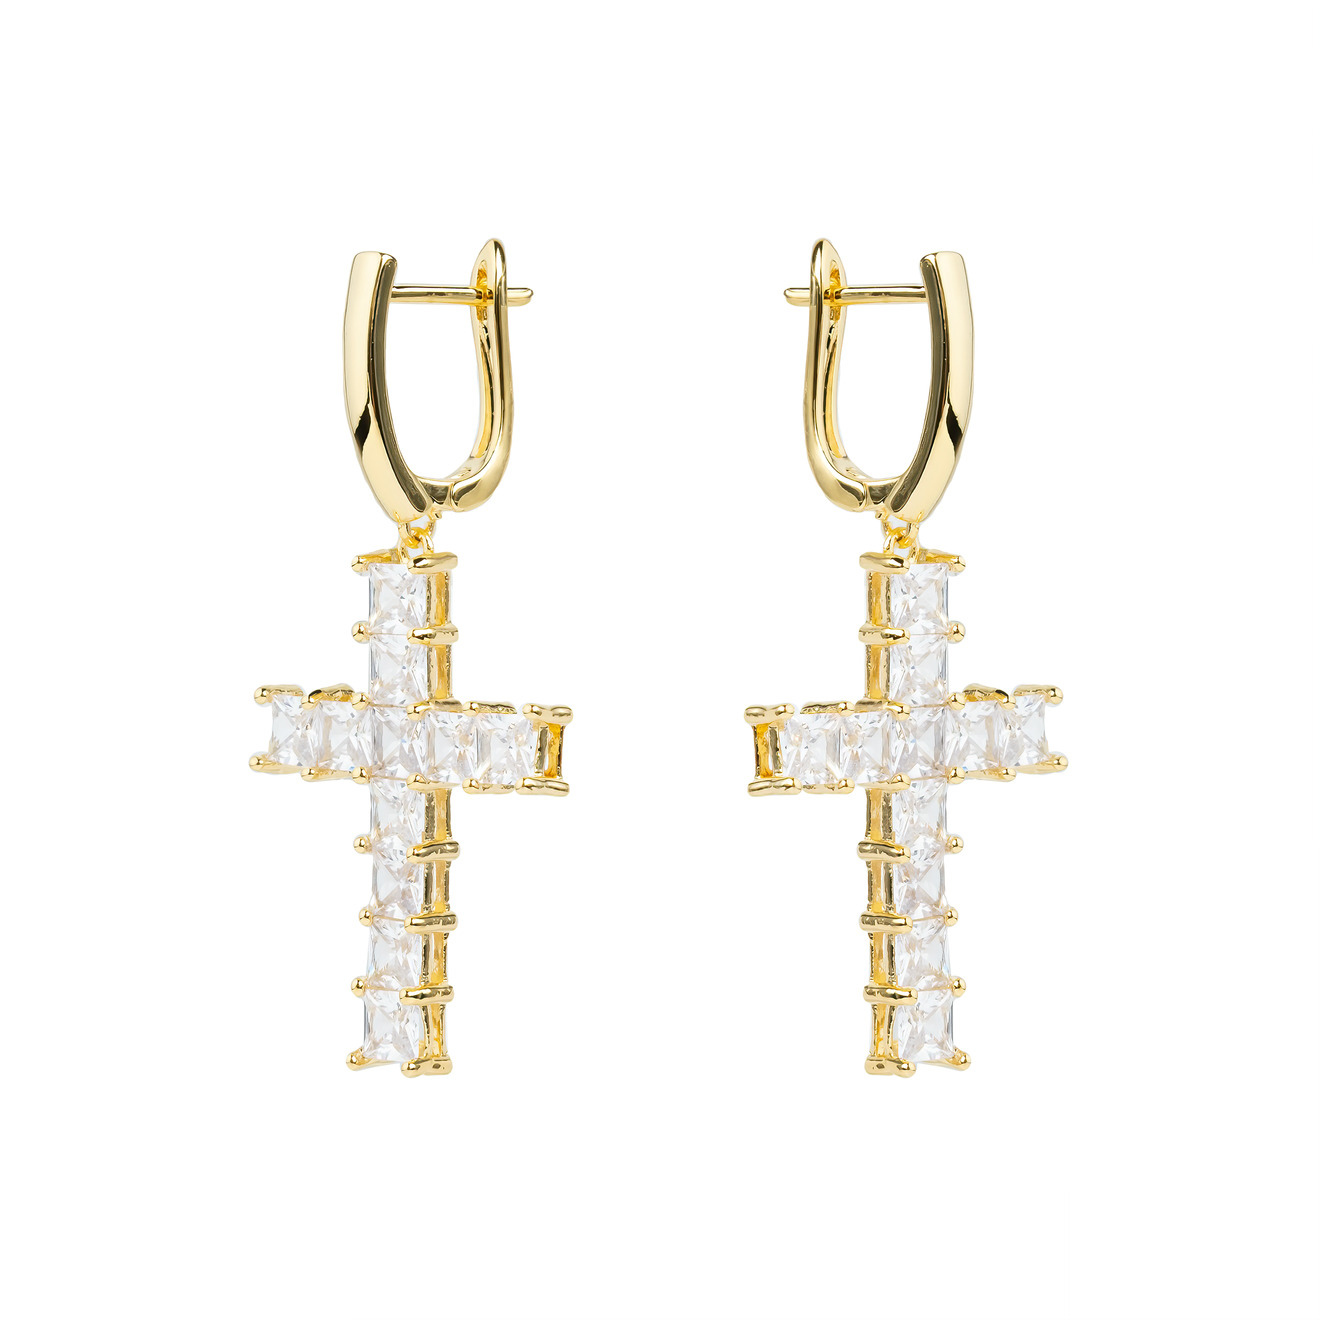 Herald Percy Золотистые серьги-кресты с кристаллами herald percy двойные золотистые серьги с белыми кристаллами